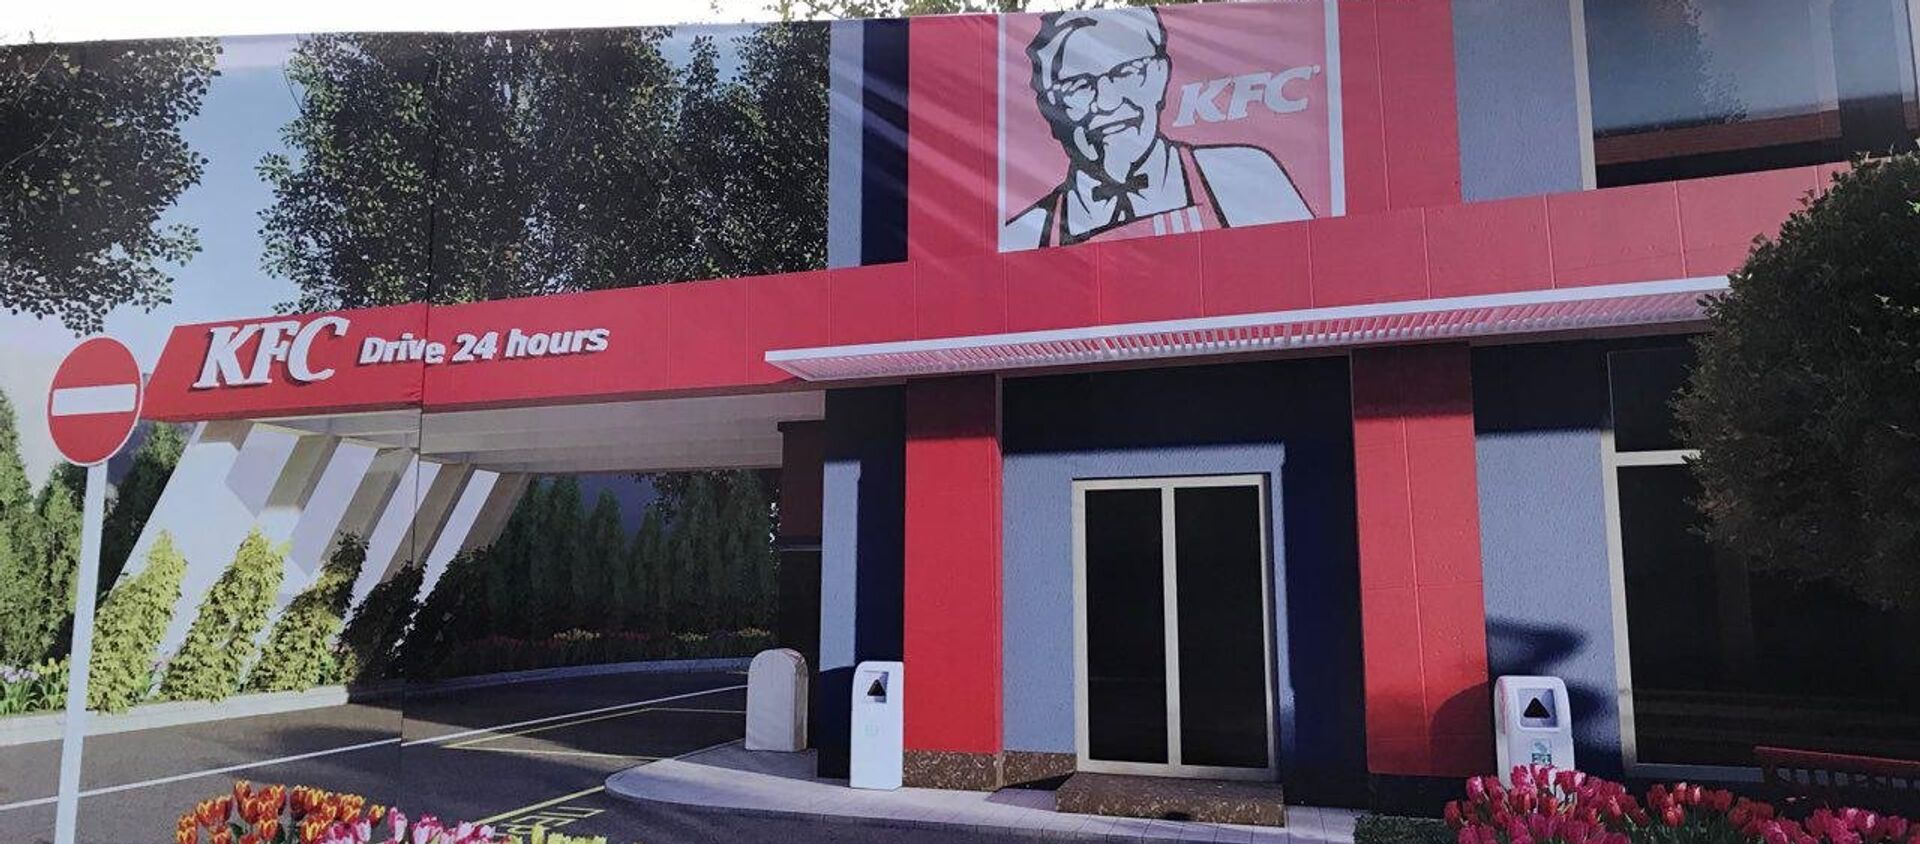 Первый ресторан известной международной сети KFC откроют в центре Ташкента - Sputnik Узбекистан, 1920, 22.11.2018